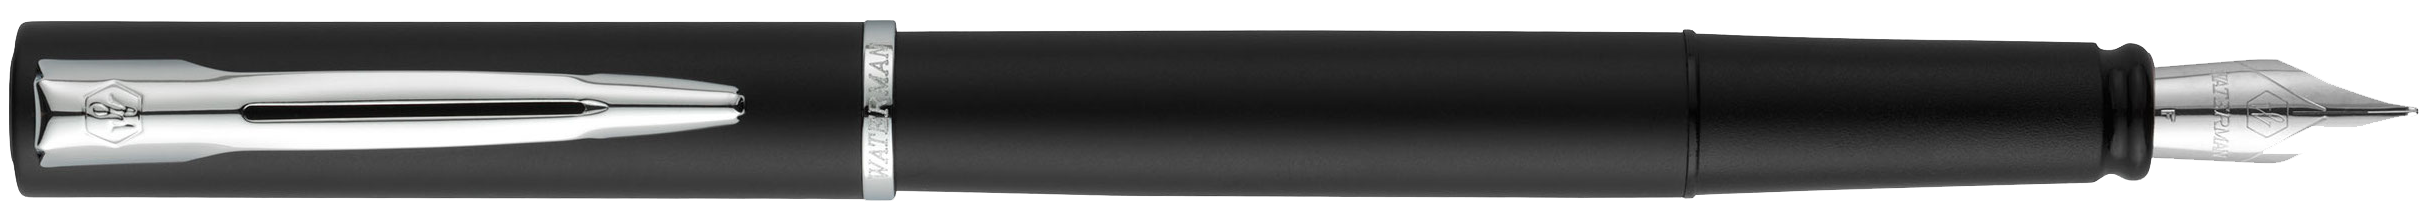 2068196 Waterman Graduate Перьевая ручка   ALLURE, цвет: черный, перо: F